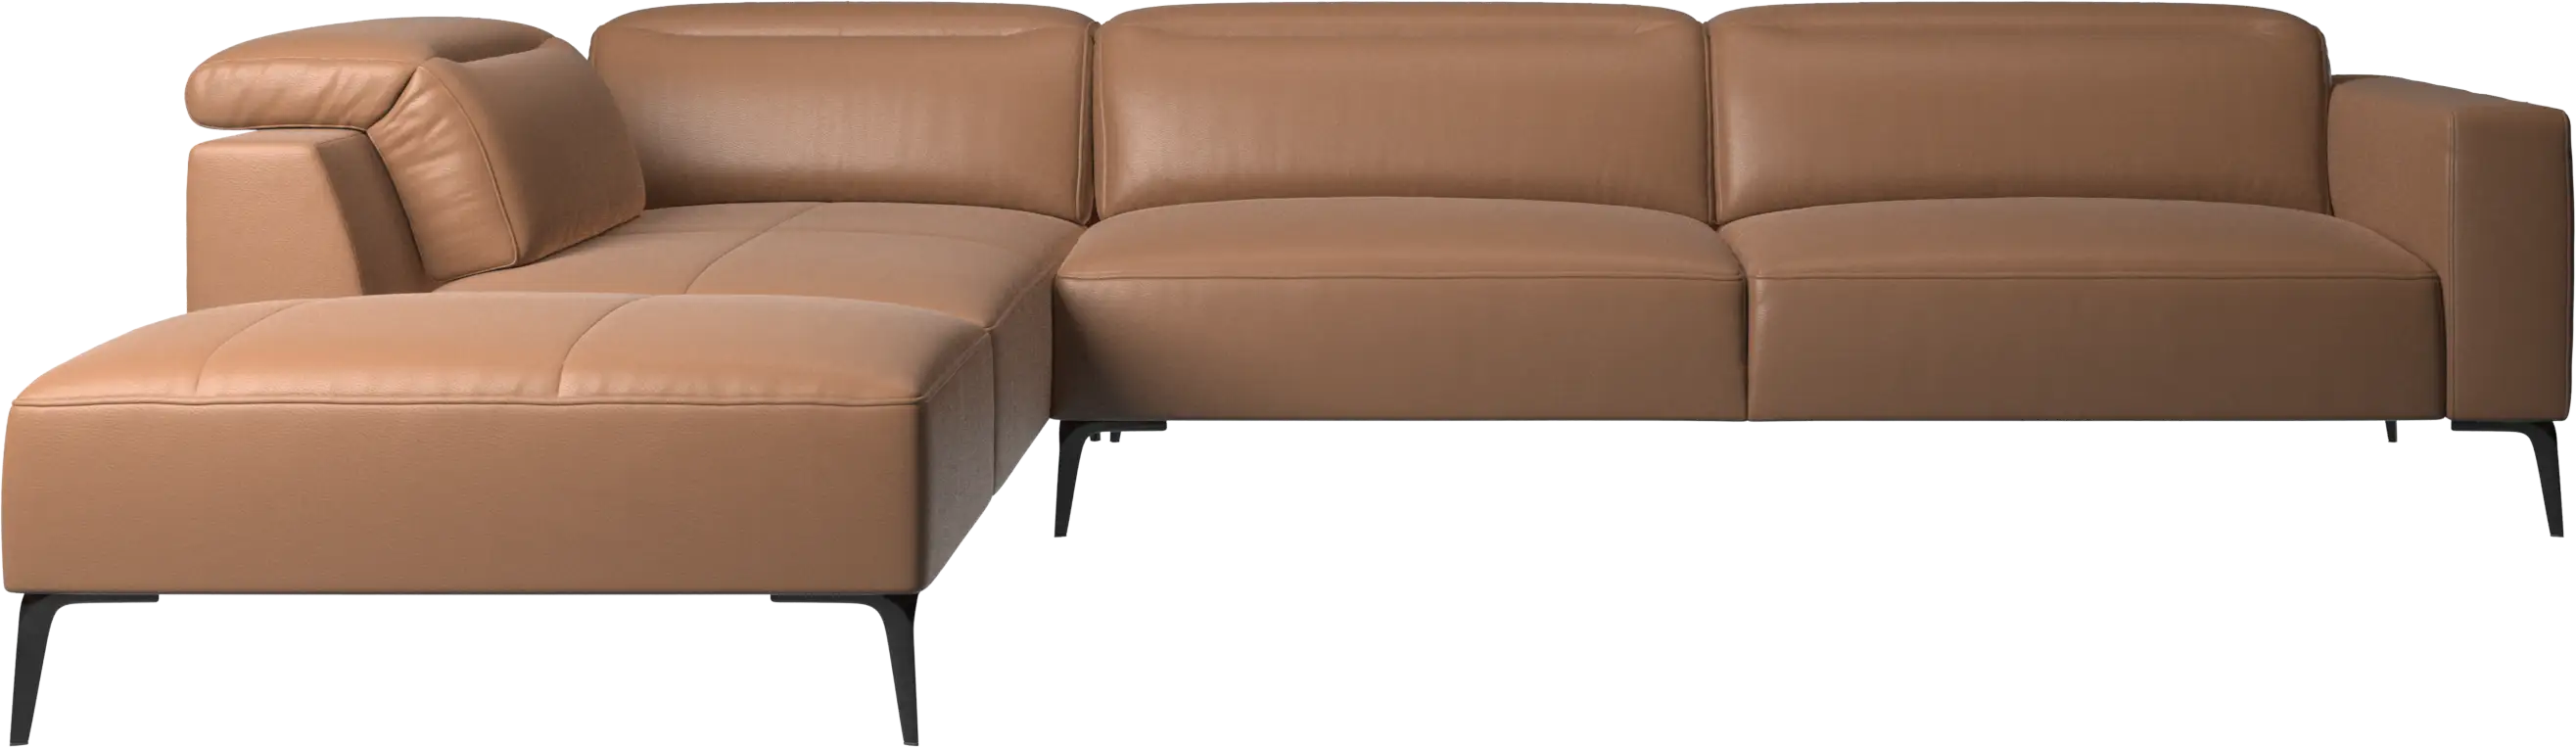 Canapé d'angle Zürich avec module chaise longue